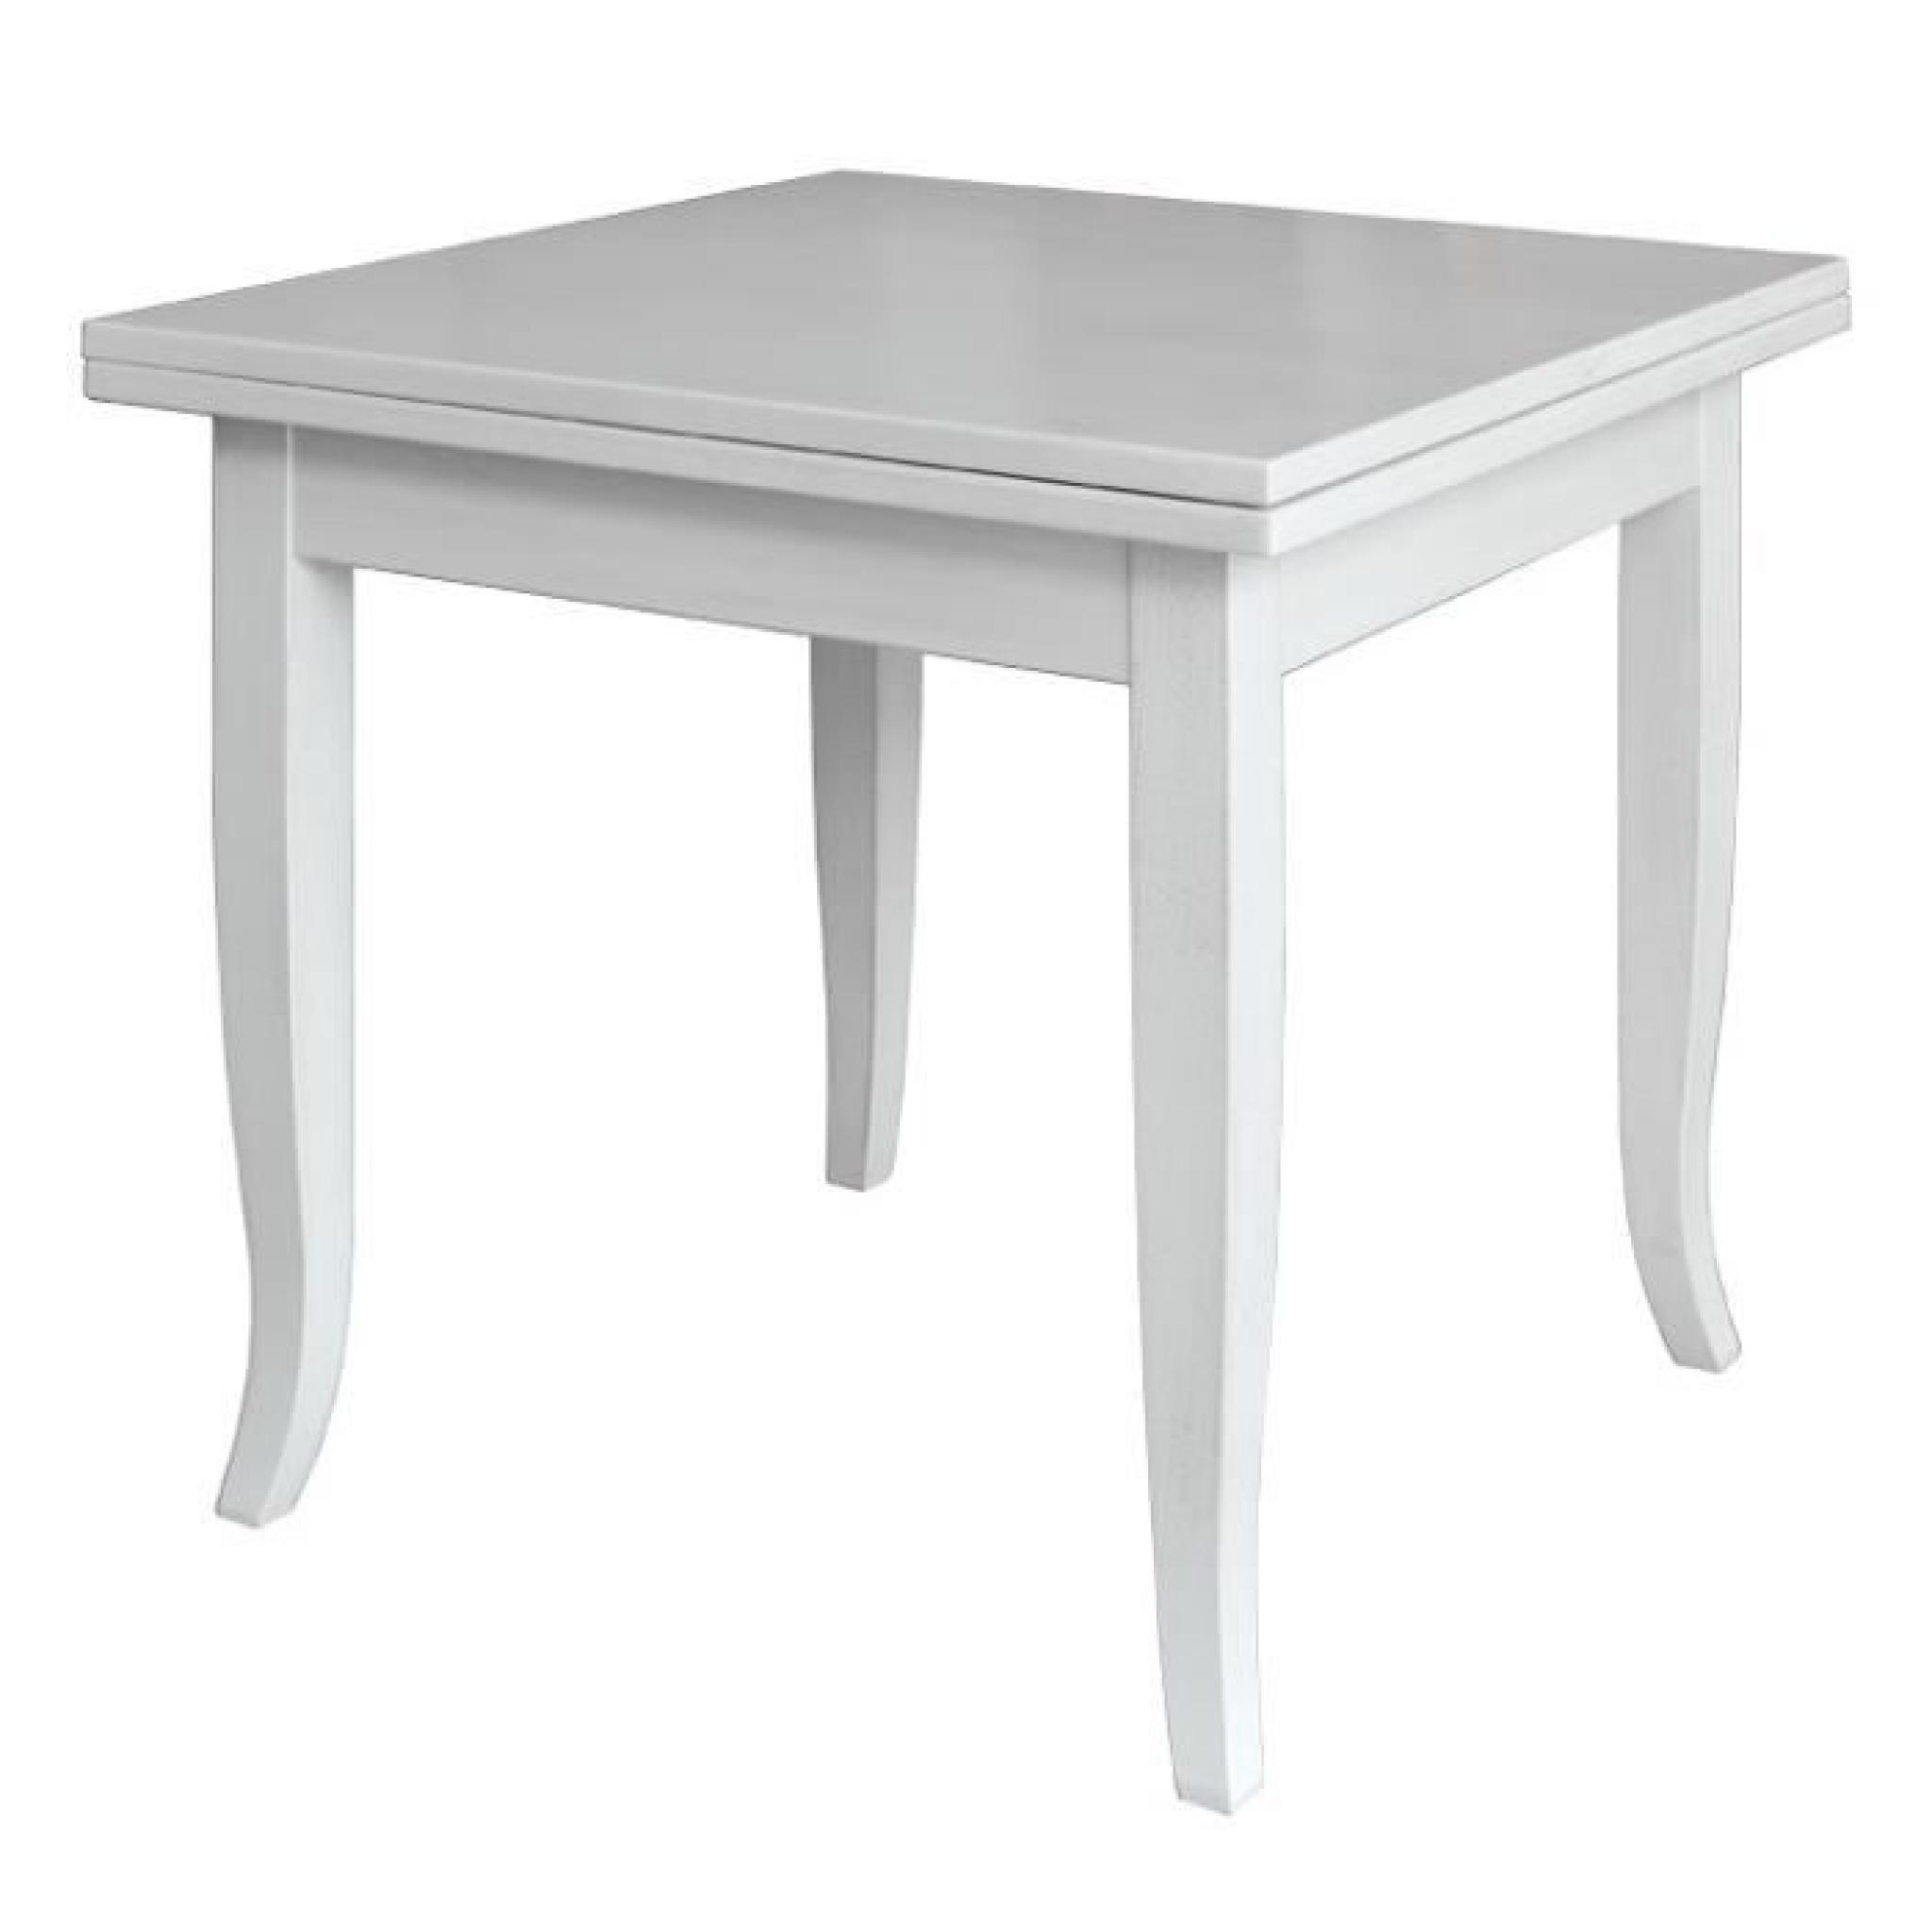 Table pliante carrée 80x80 cm pas cher